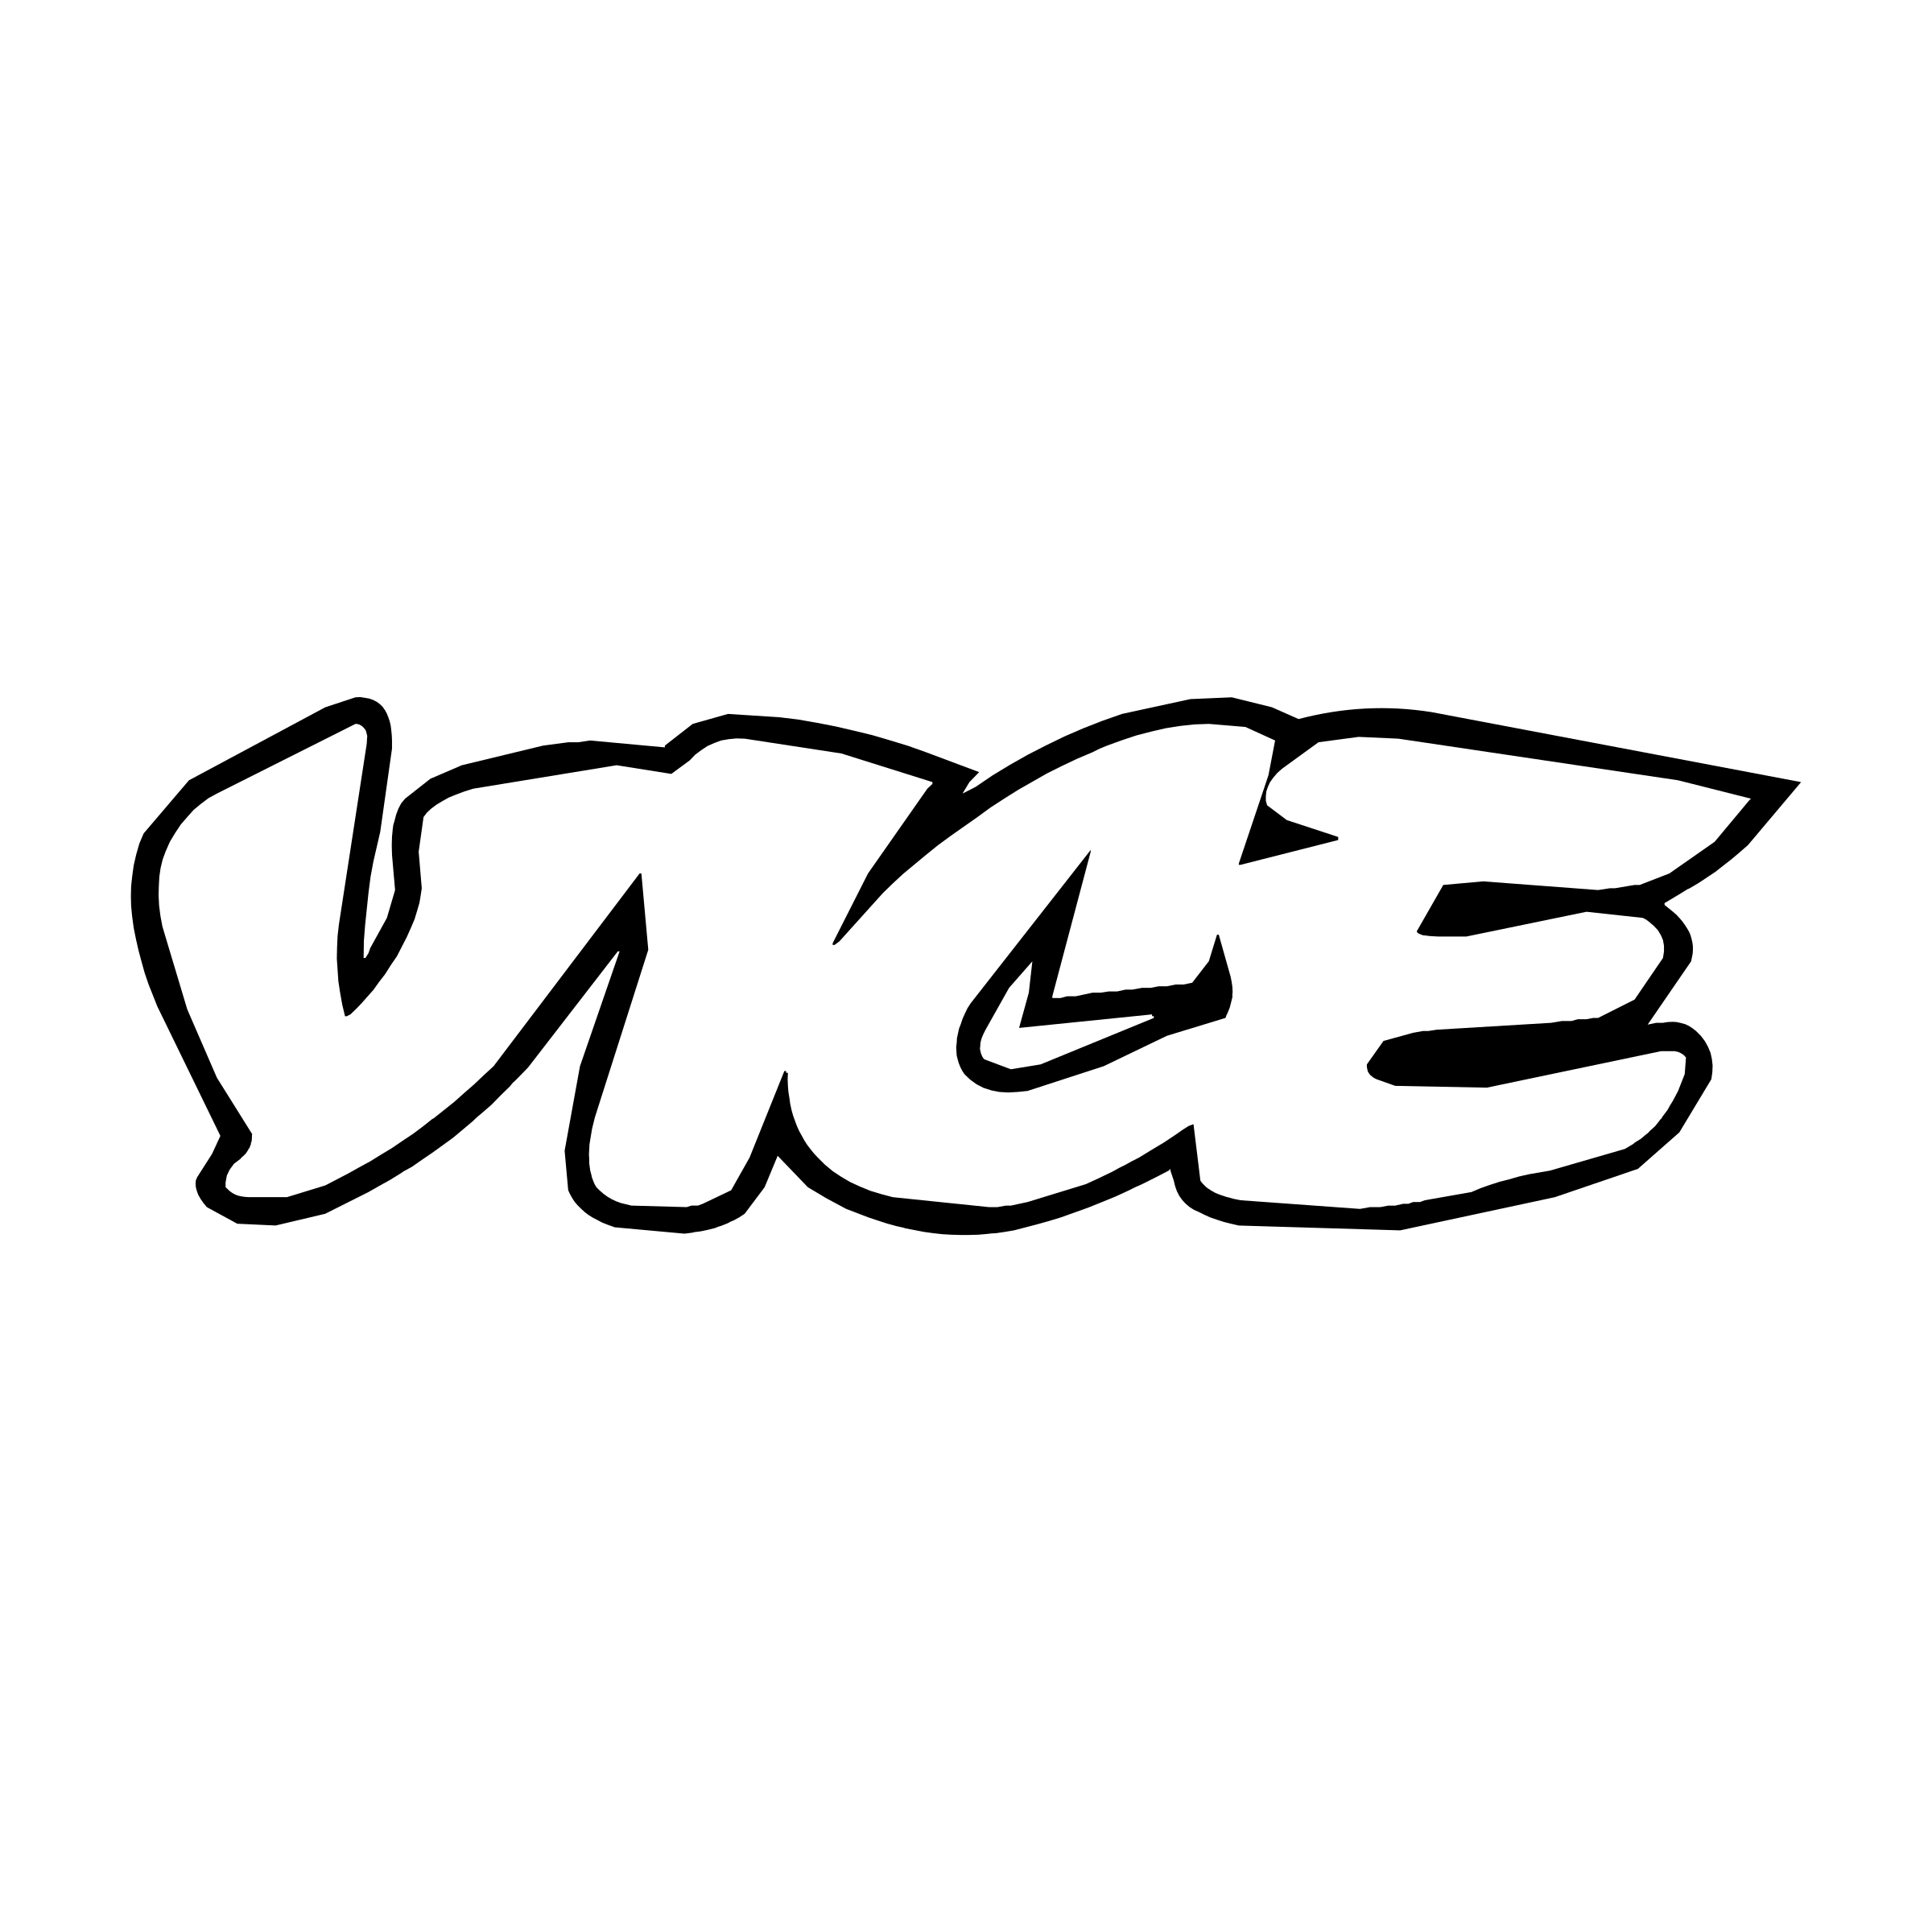 vice-land-logo-png-transparent.png